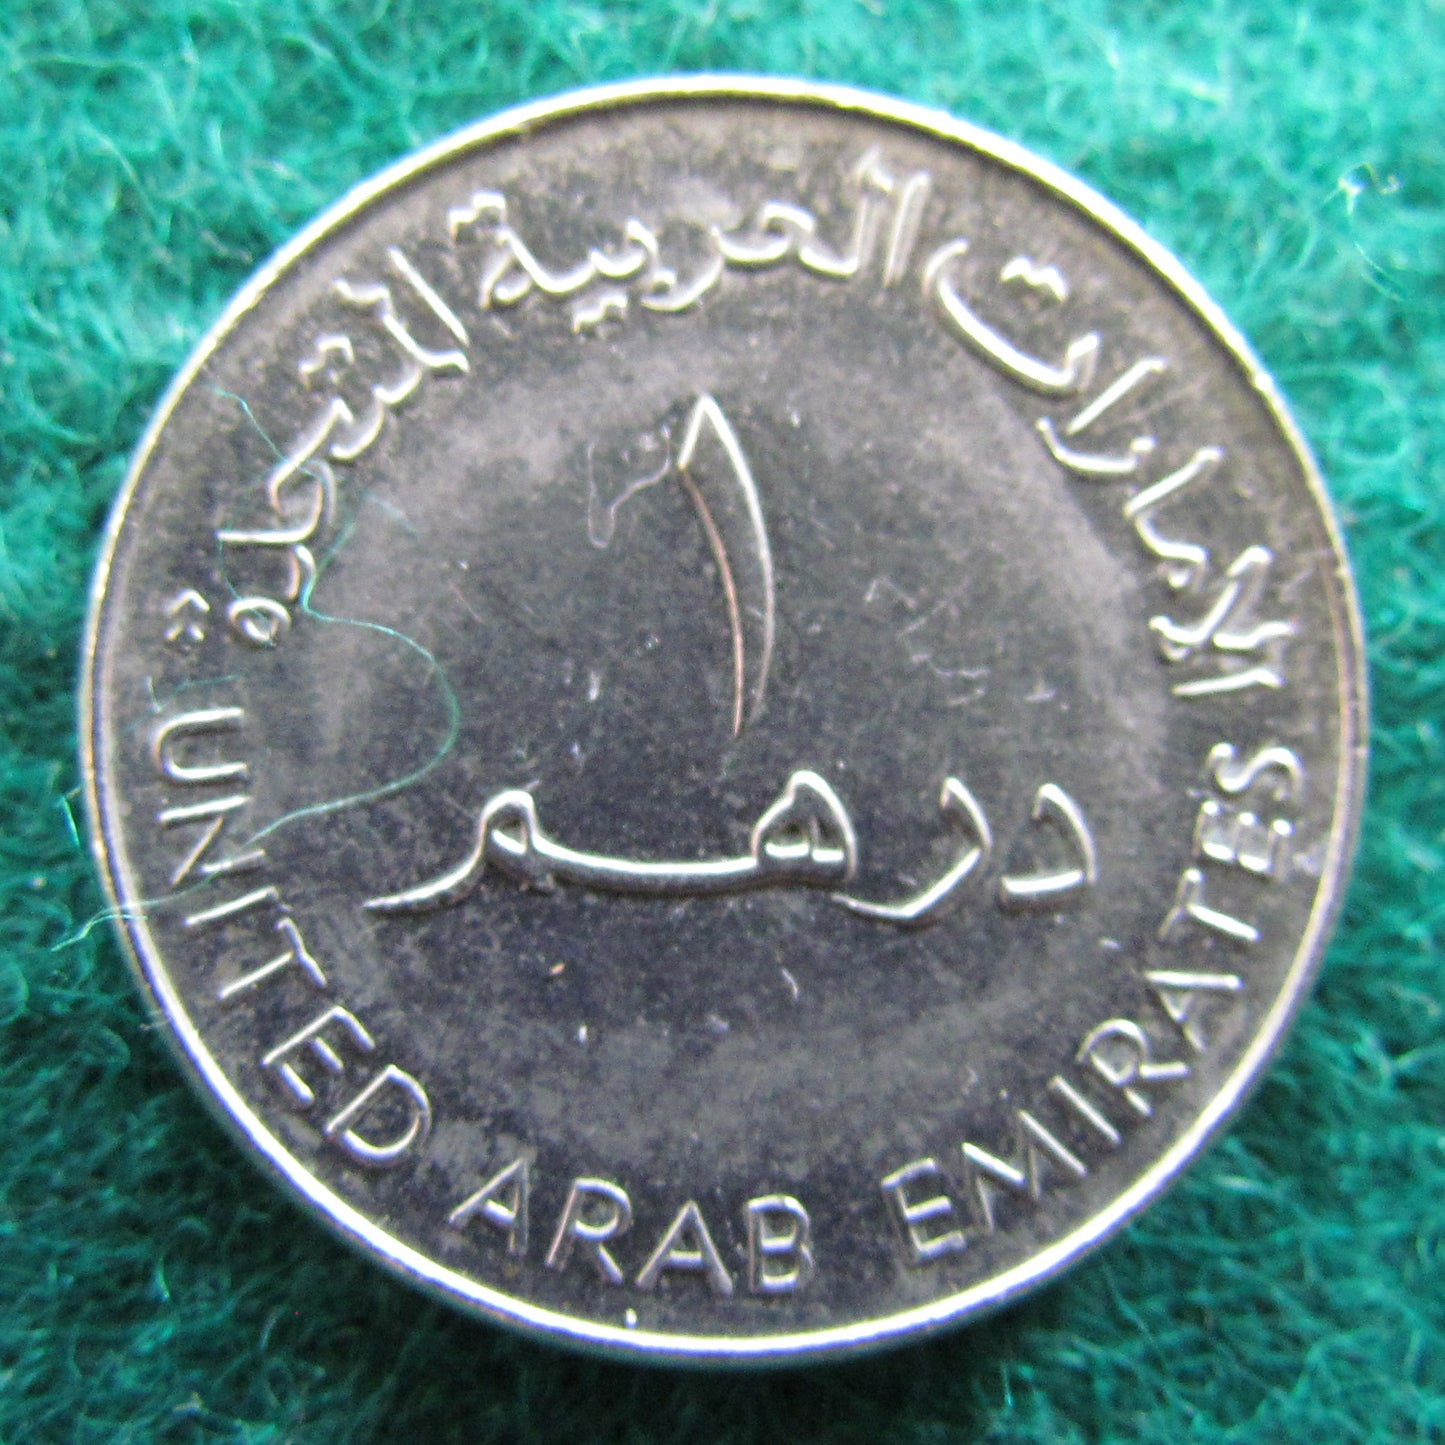 United Arab Emirates 2005 1 One Dirham Coin